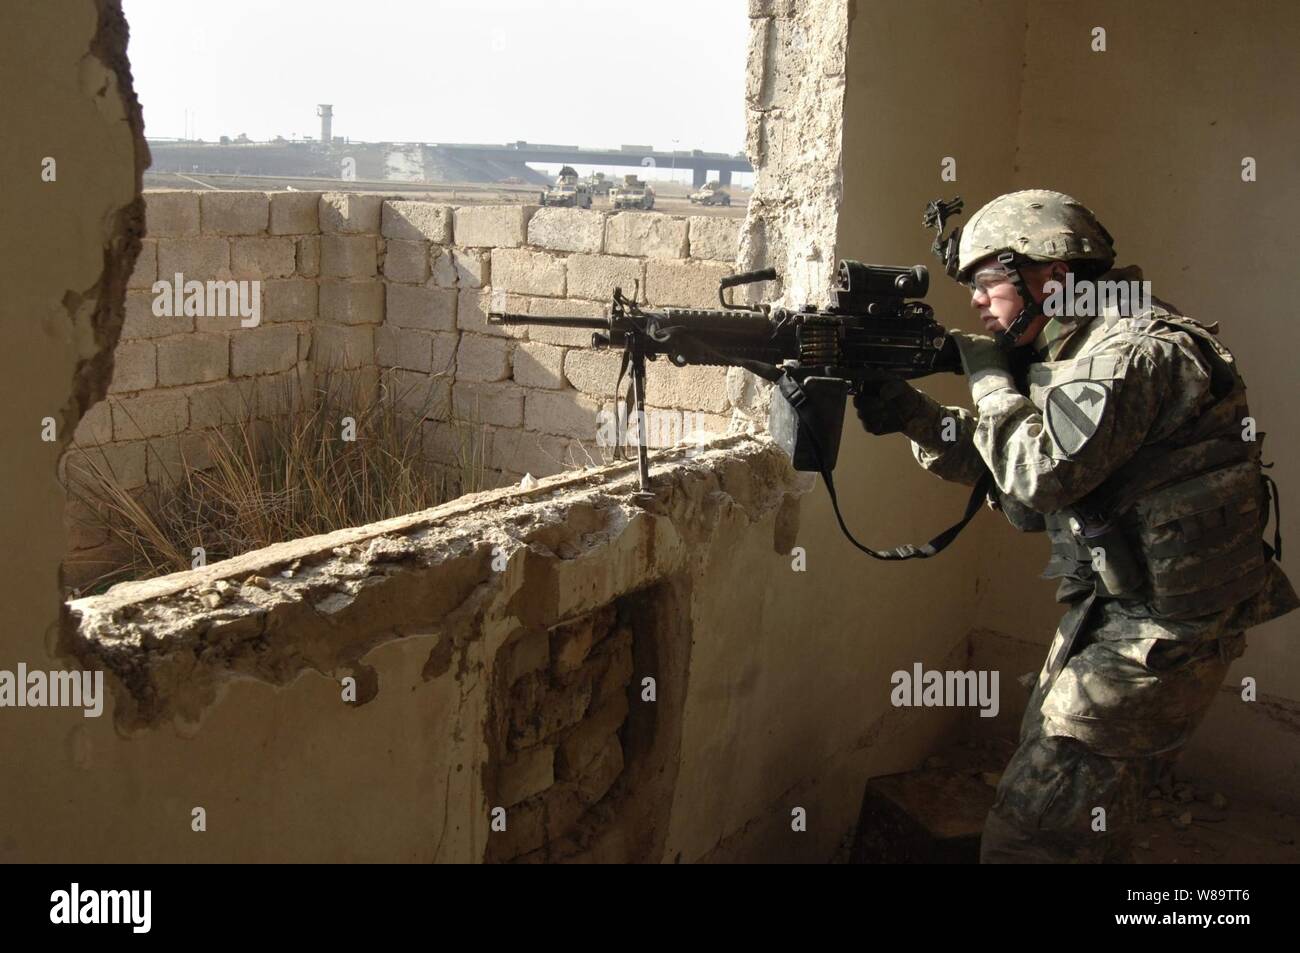 Stati Uniti Army Spc. Brett Campana, un incendio supporto specialista assegnato alla società di Echo, 2° Battaglione, quinto reggimento di cavalleria, 1a divisione di cavalleria, ricerche di contatti durante un cordone e operazione di ricerca nella zona occidentale di Baghdad, Iraq, nel febbraio 23, 2007. Foto Stock